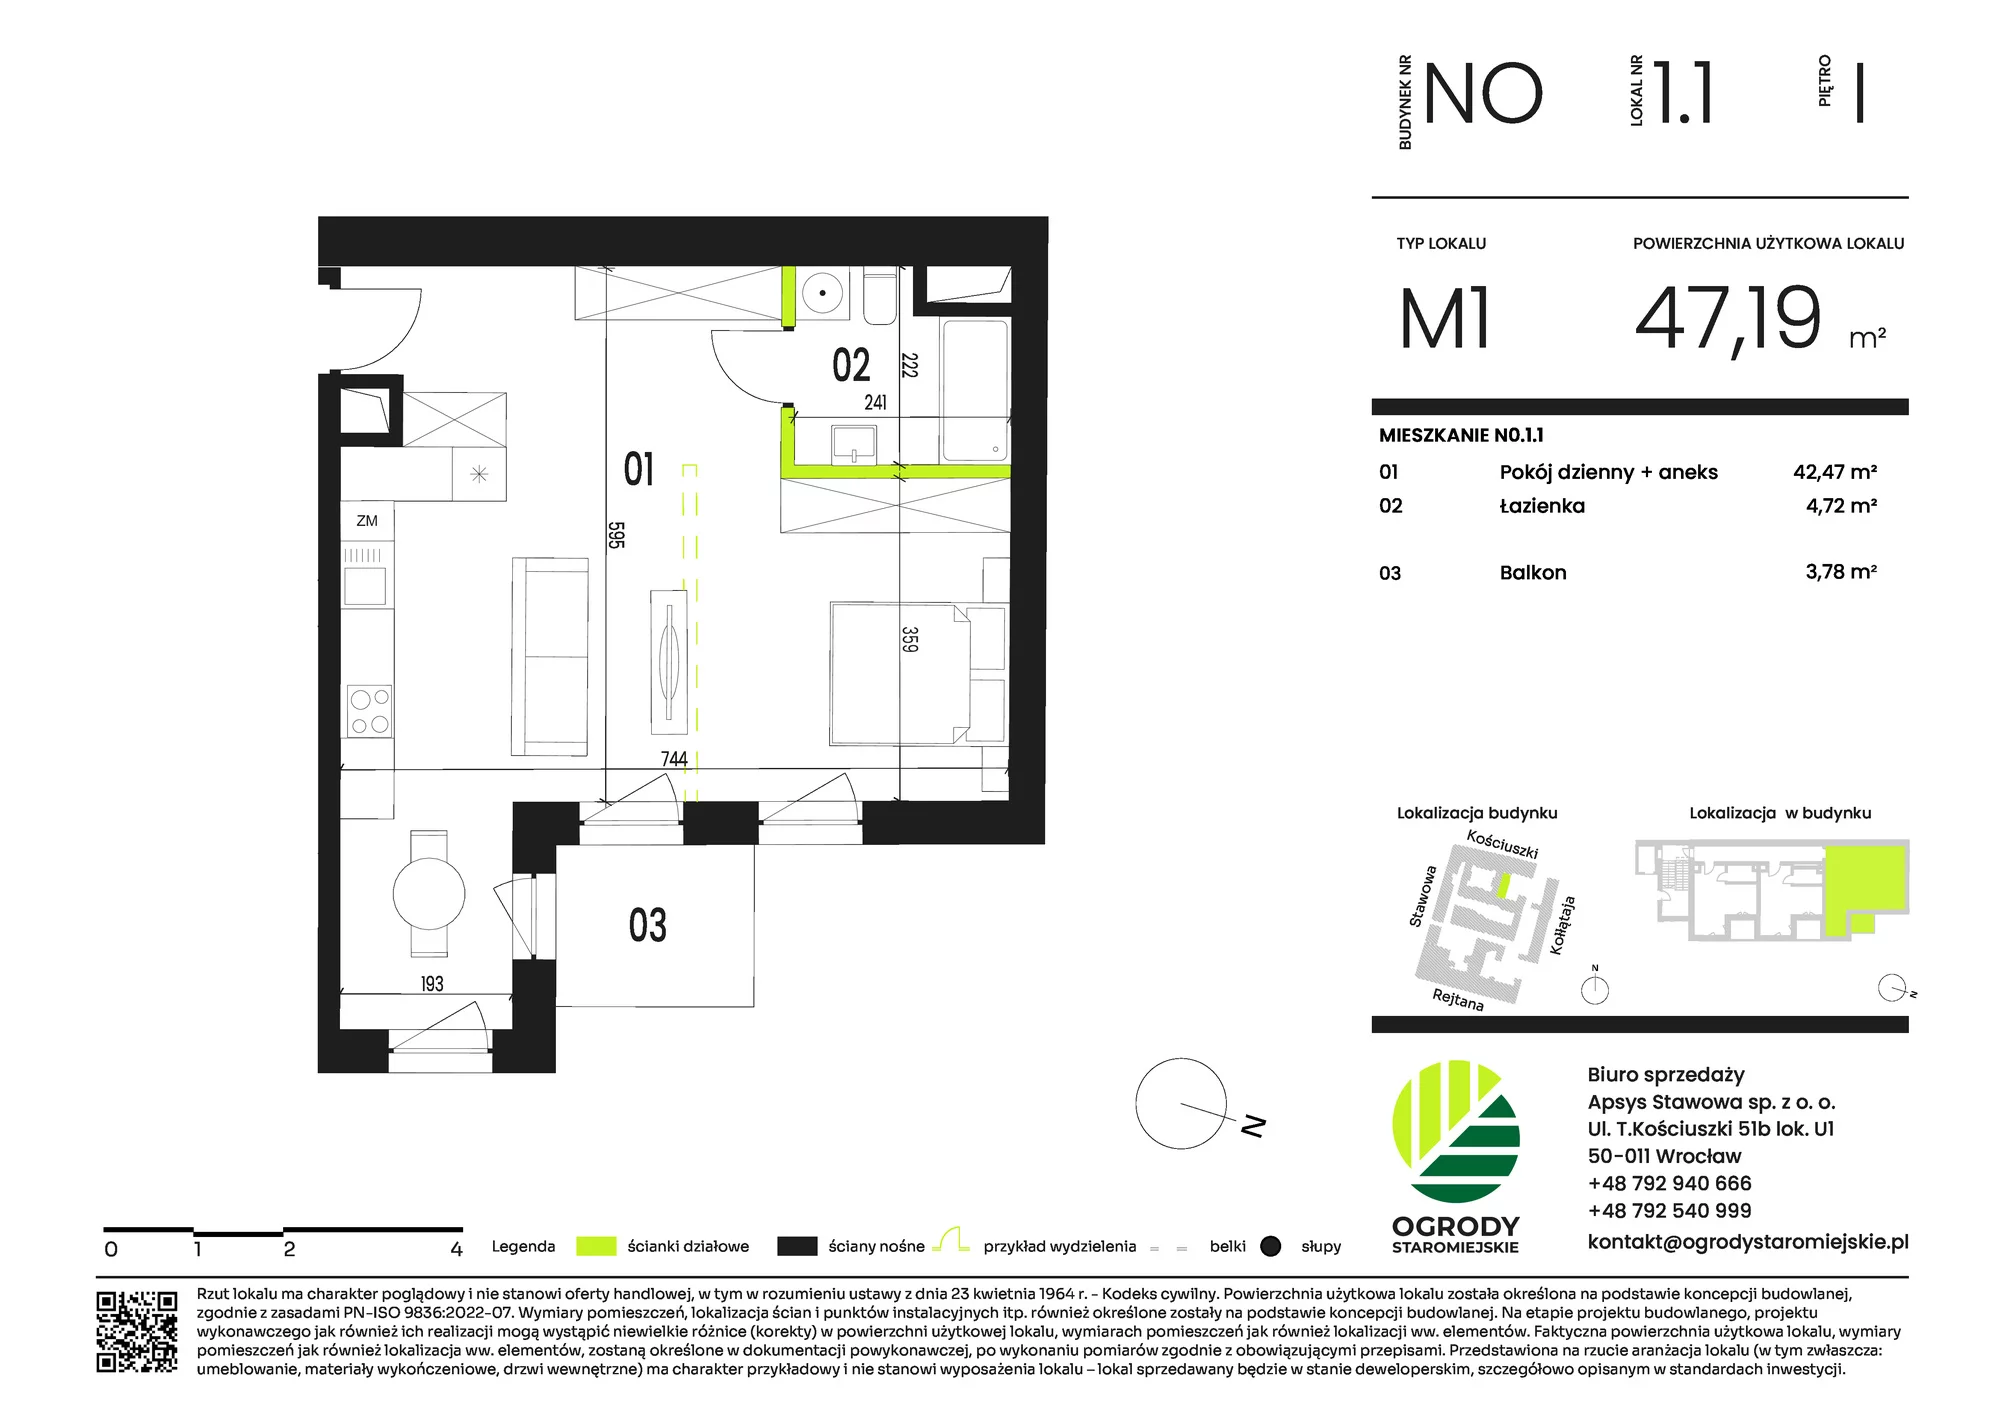 Mieszkanie 47,19 m², piętro 1, oferta nr NO.1.1, Ogrody Staromiejskie, Wrocław, Przedmieście Świdnickie, ul. Stawowa 10